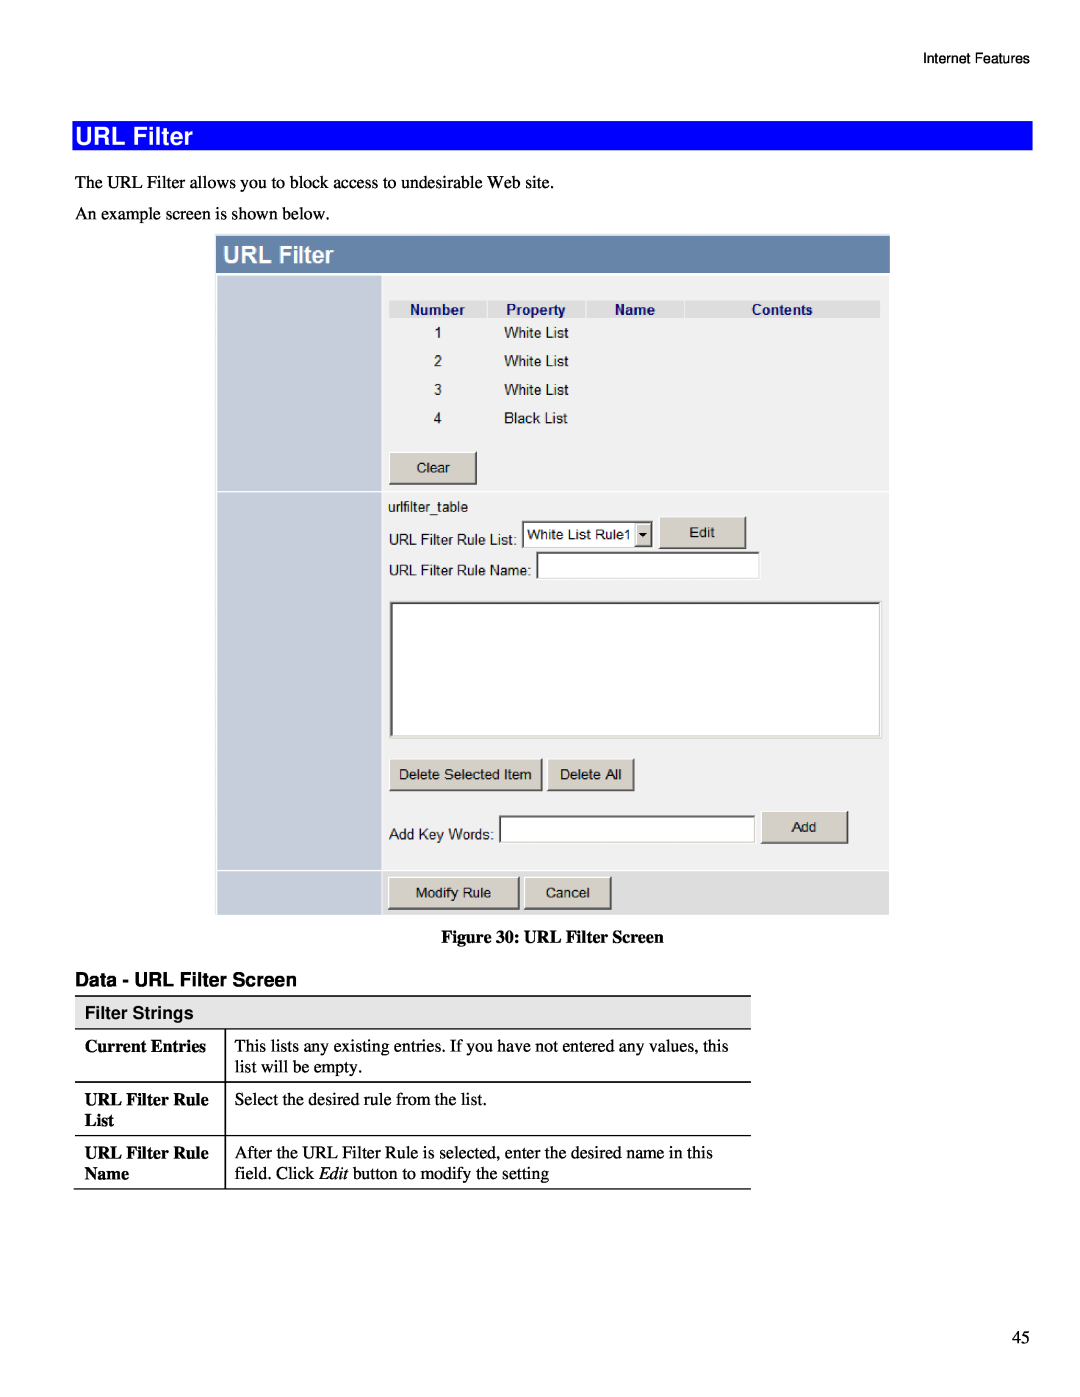 TRENDnet TW100-BRV324 manual Data - URL Filter Screen, Filter Strings 